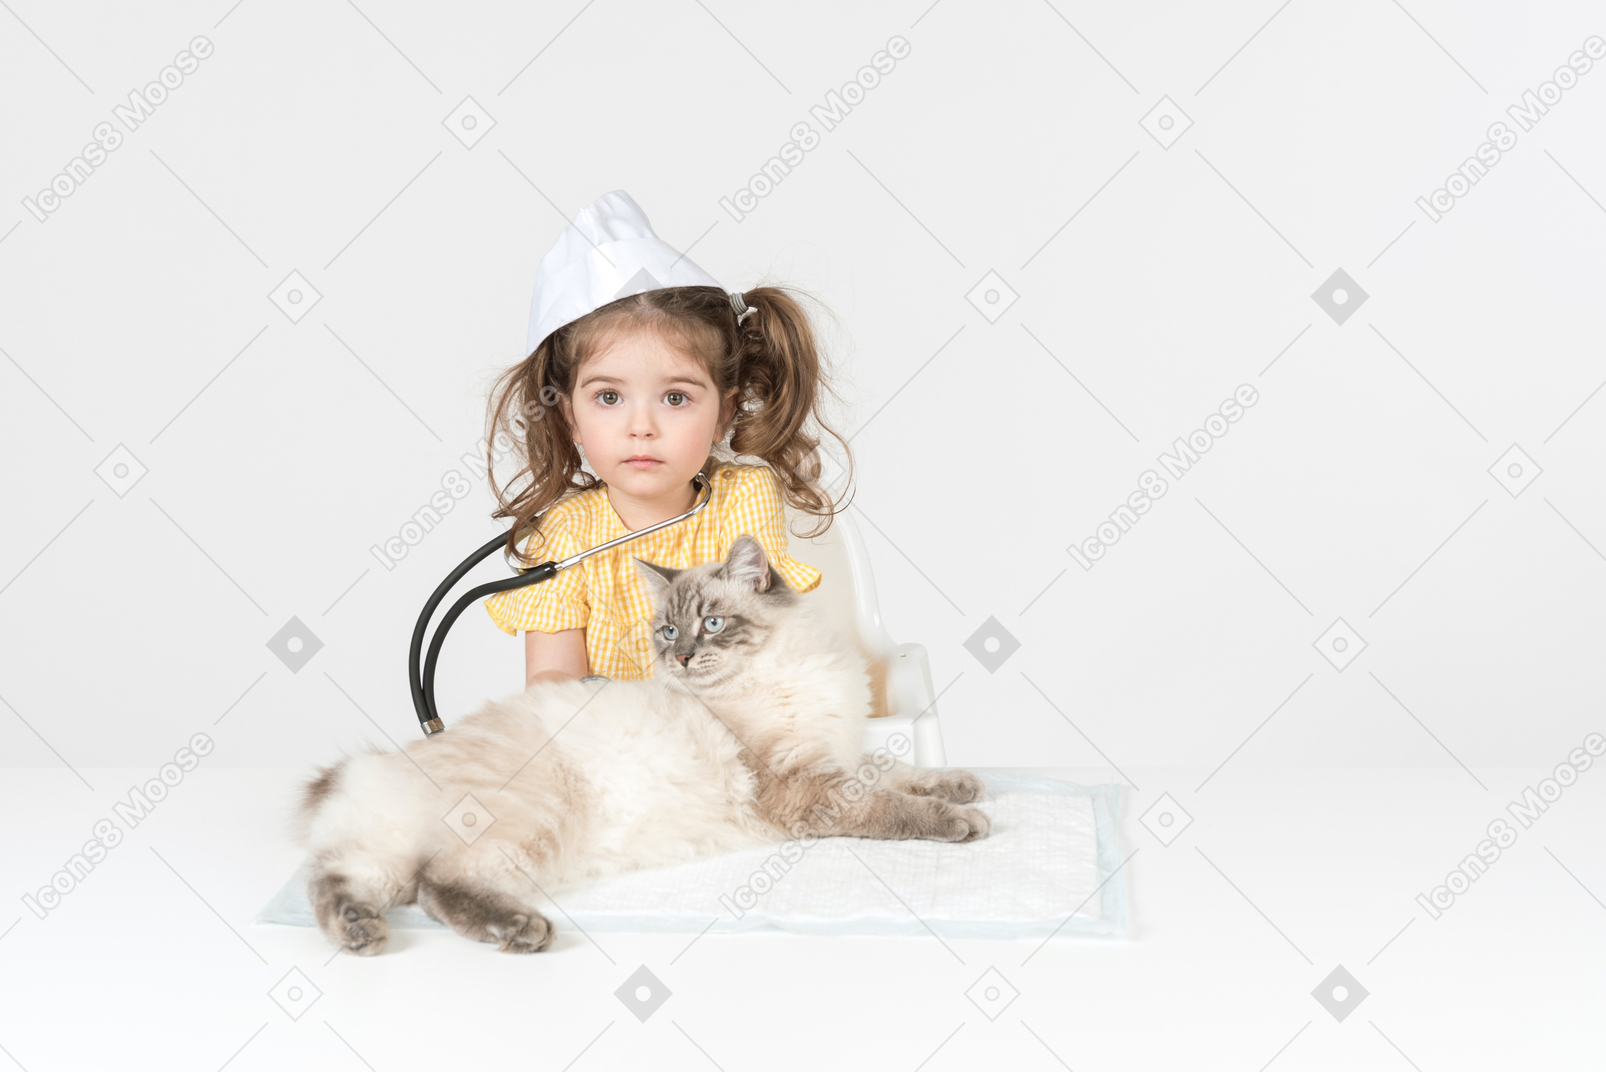 Kleinkindmädchen mit stethoskop und dem tragen des medizinischen hutes, der eine katze kuriert